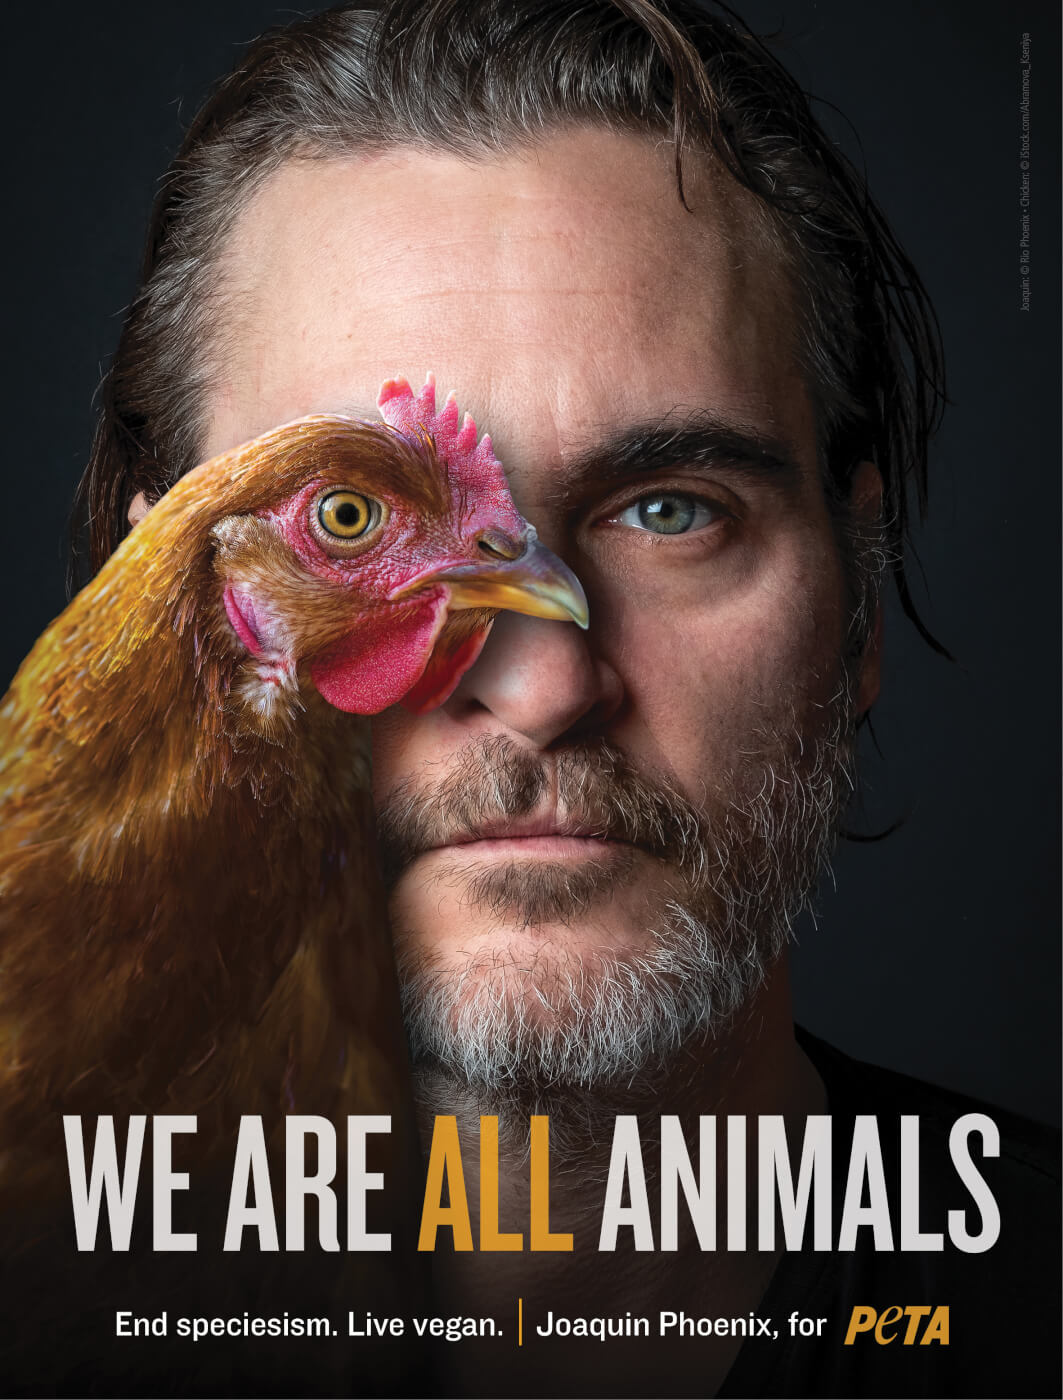 Joaquin Phoenix for PETA